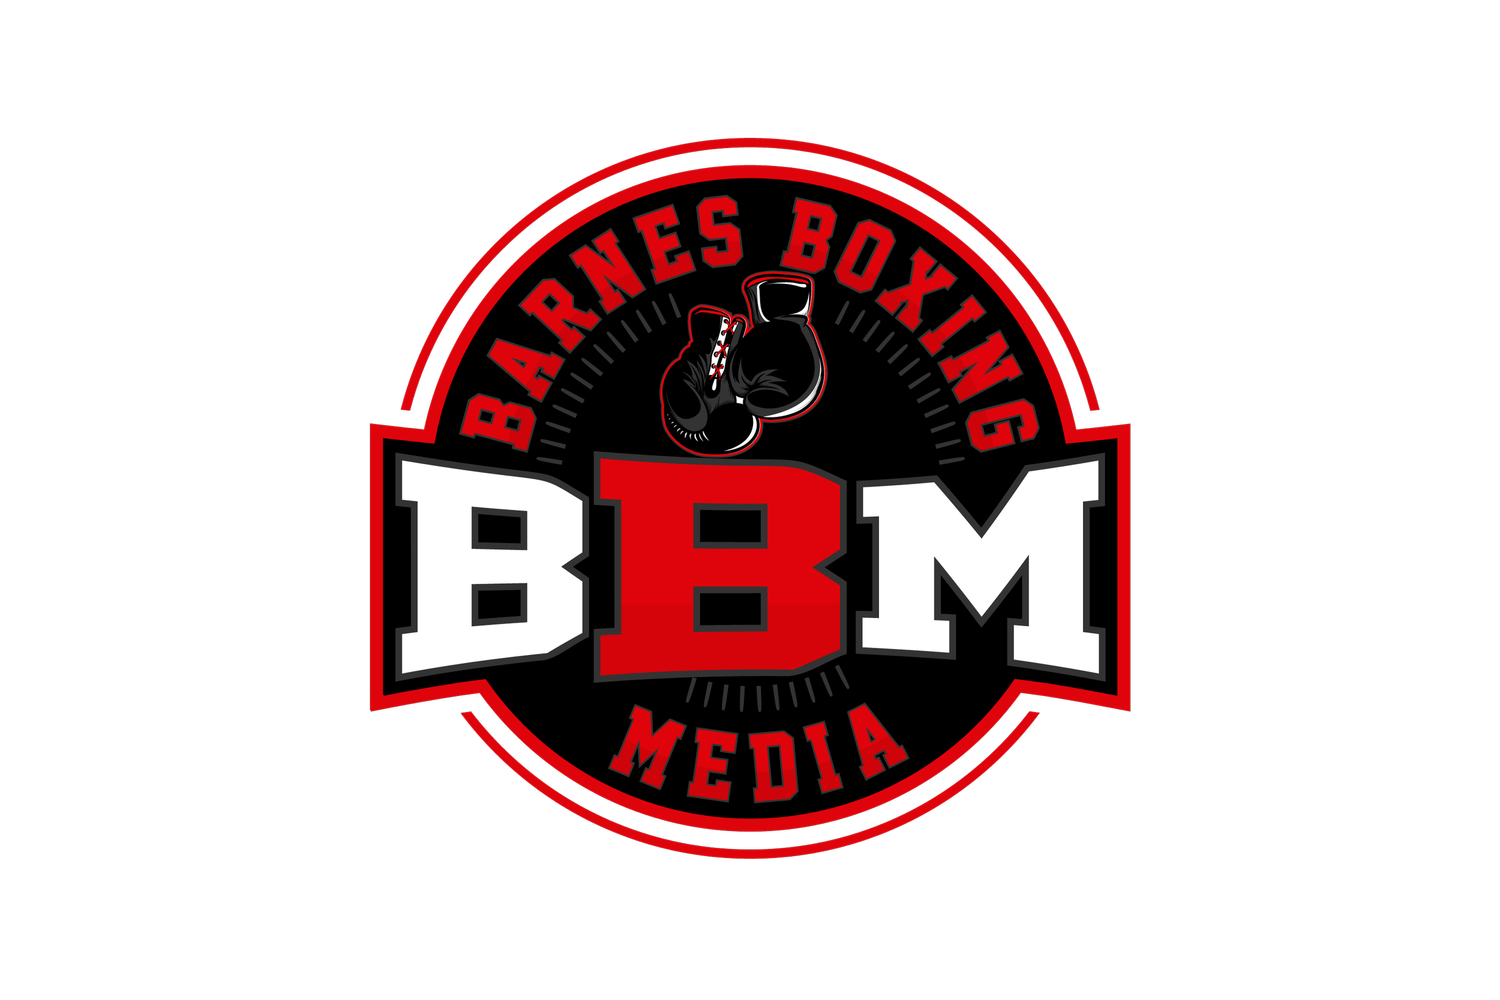 Barnes Boxing Media